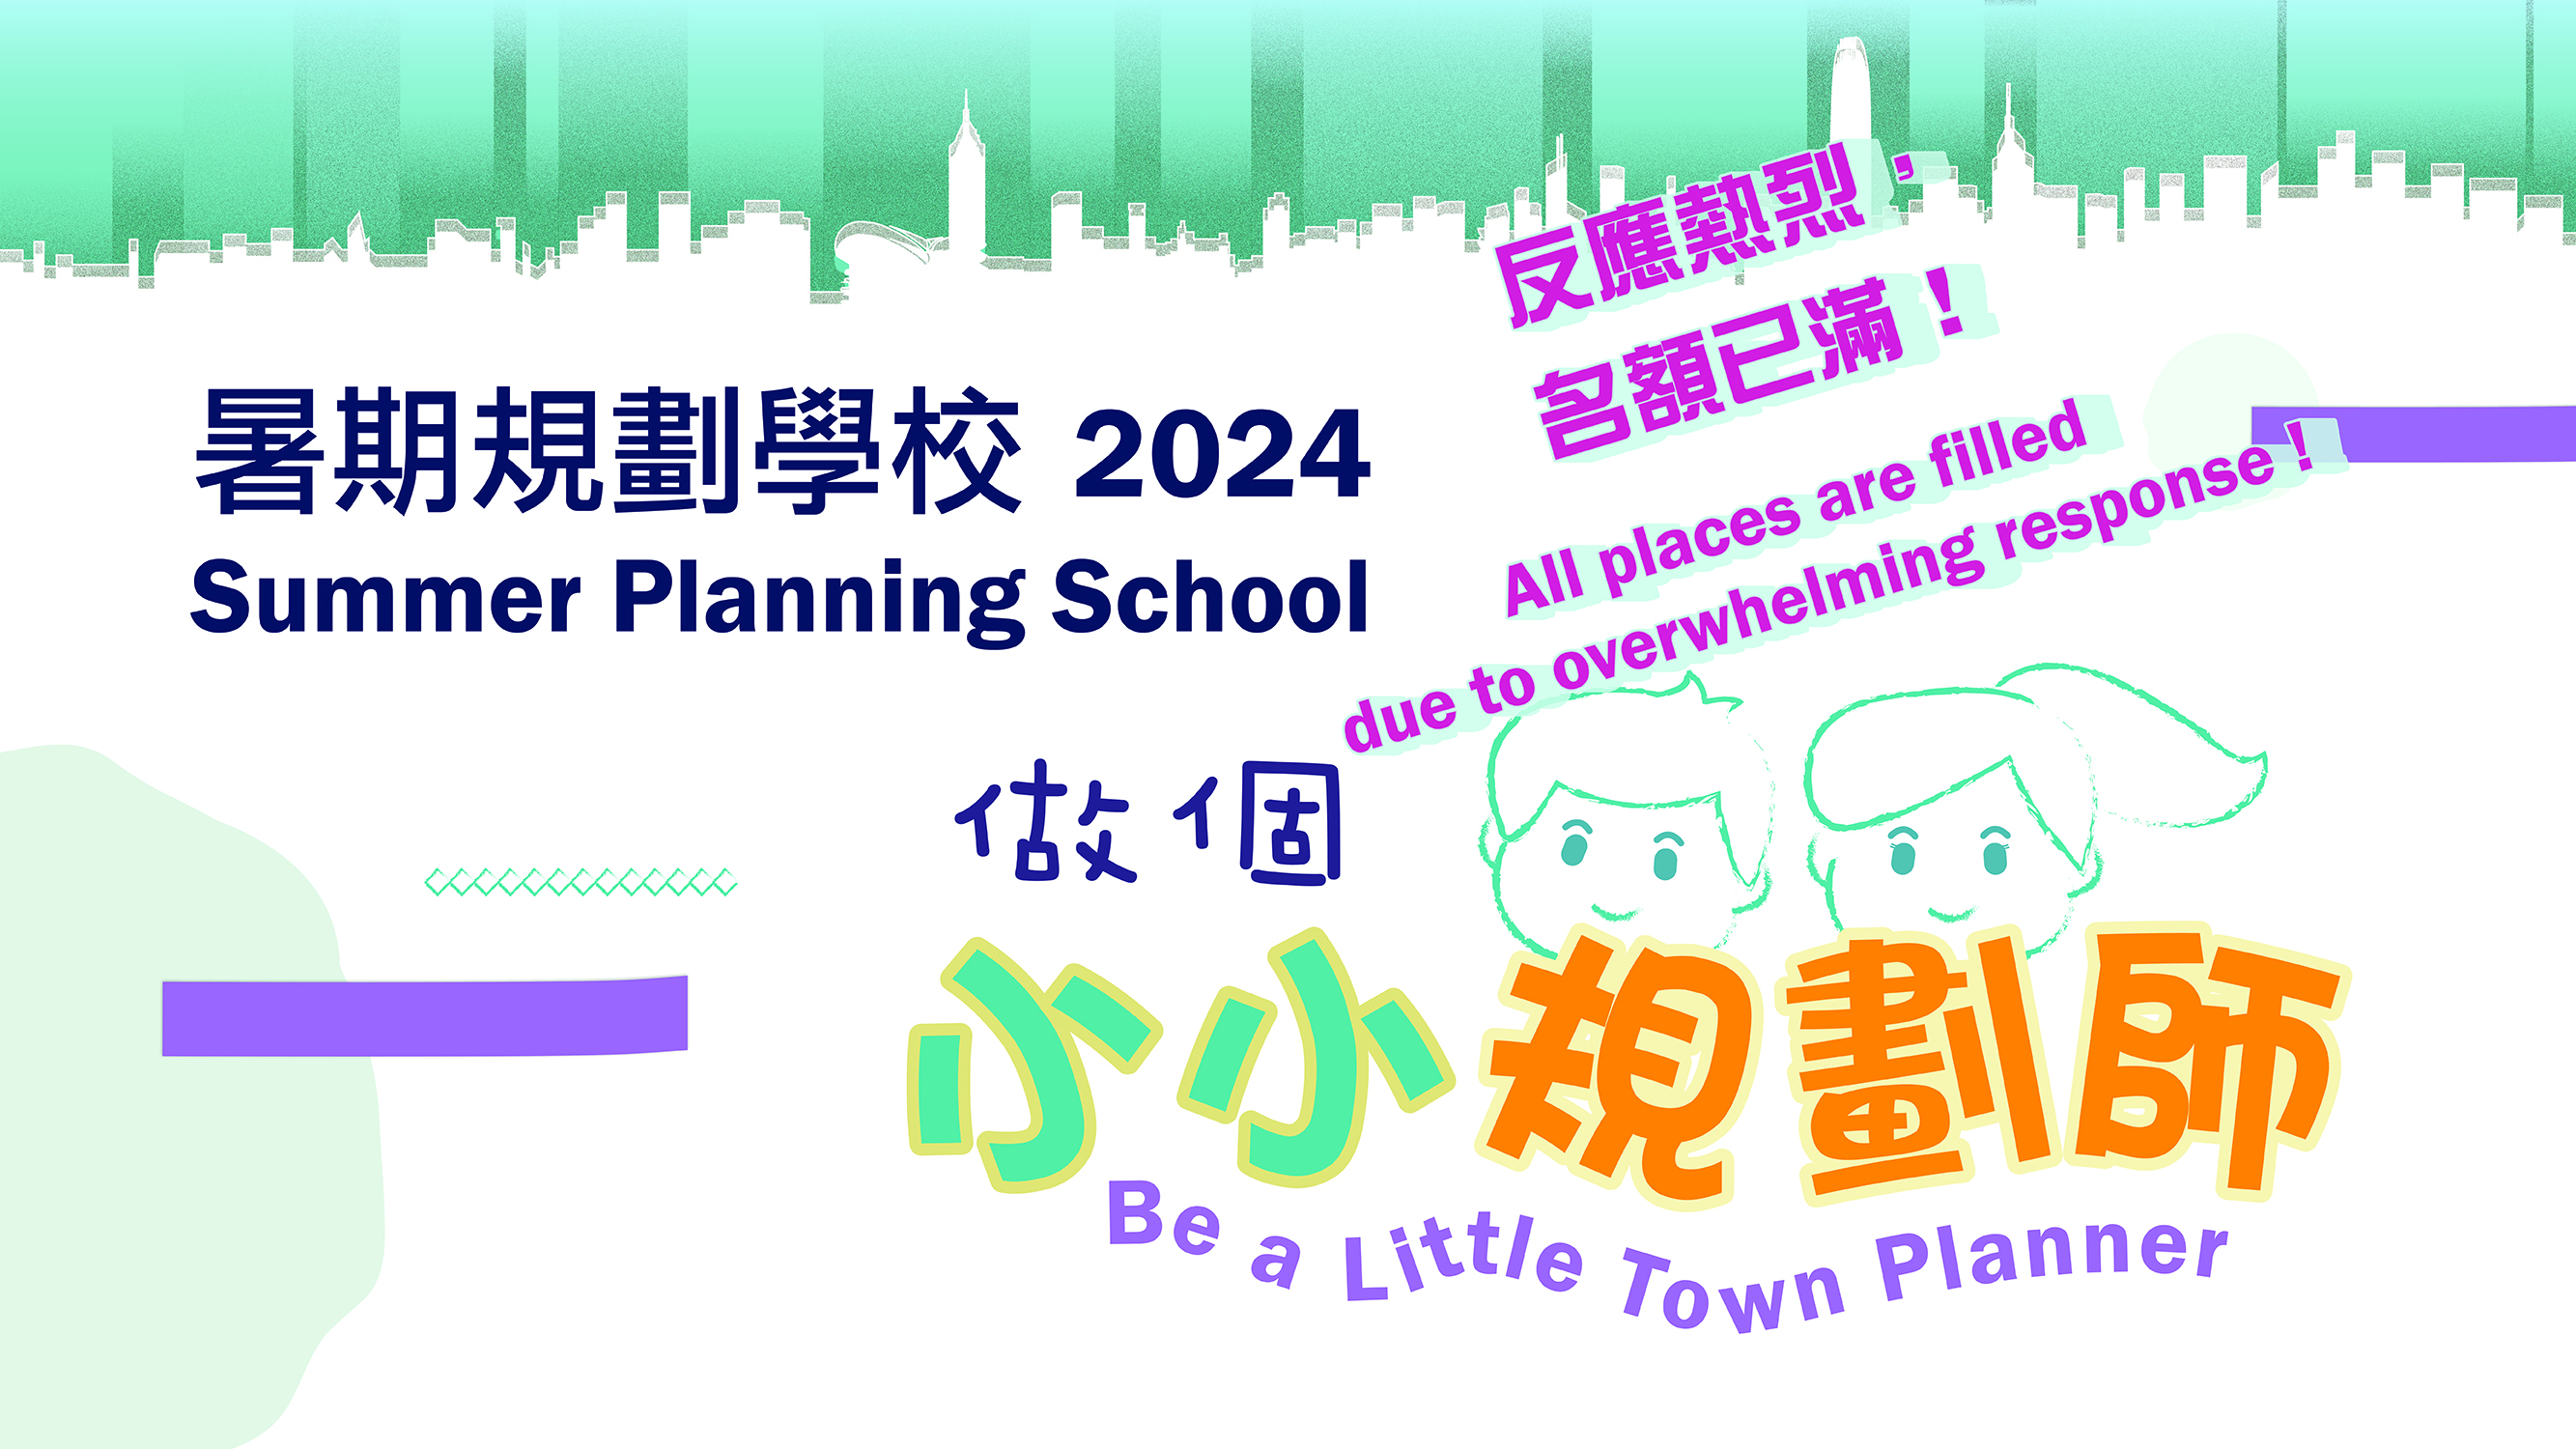 「做个小小规划师」暑期规划学校 2024